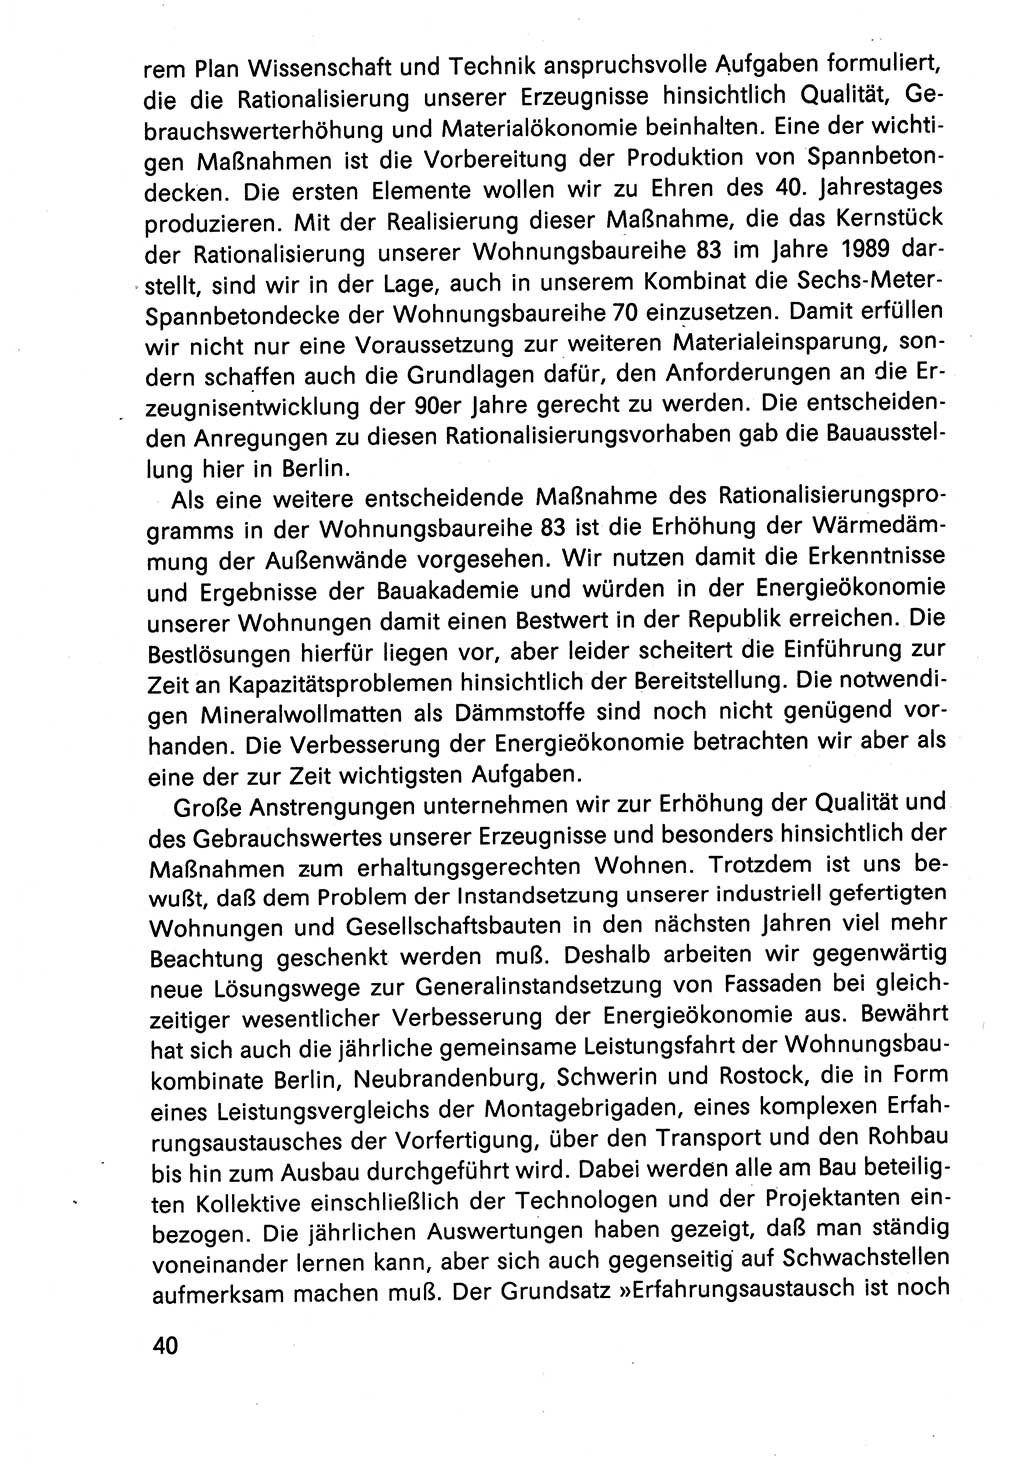 Diskussionsreden, 8. Tagung des ZK (Zentralkomitee) der SED (Sozialistische Einheitspartei Deutschlands) [Deutsche Demokratische Republik (DDR)] 1989, Seite 40 (Disk.-Red. 8. Tg. ZK SED DDR 1989, S. 40)